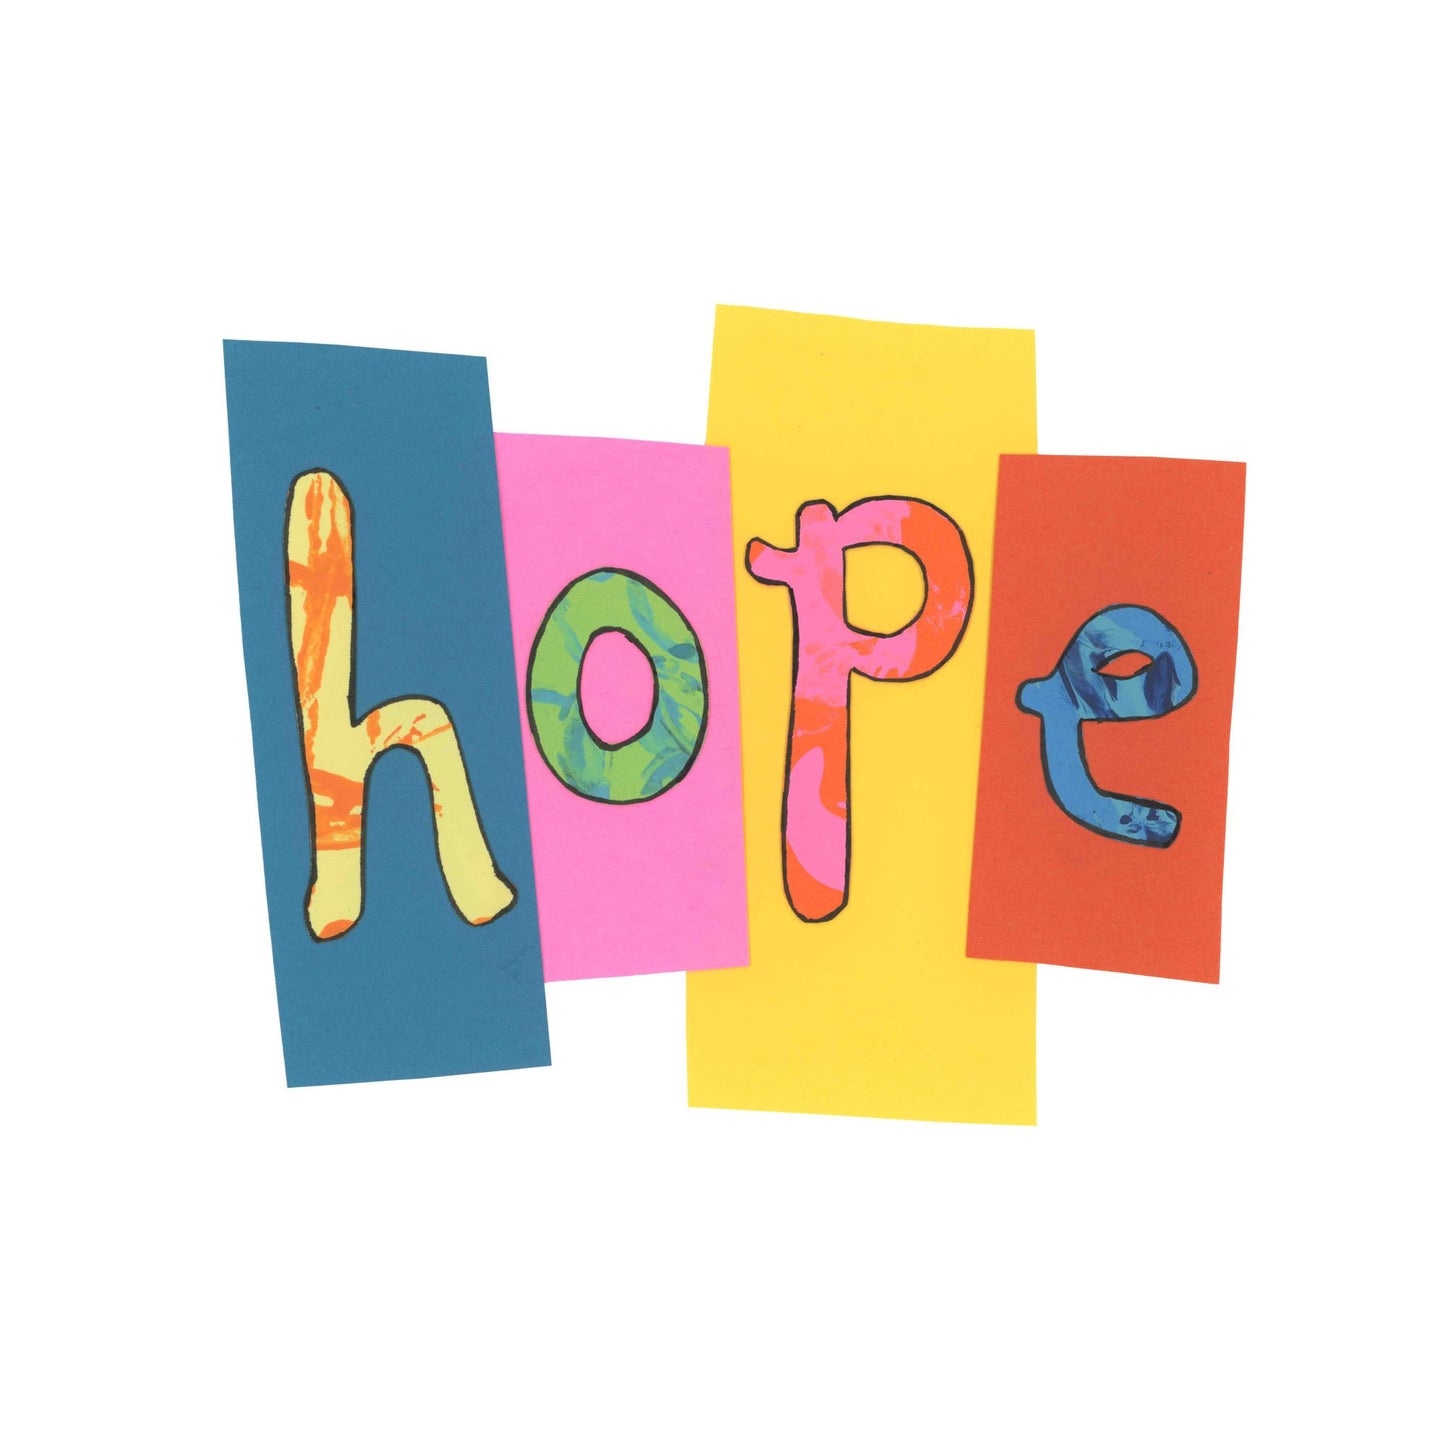 Hope 2 - Neon Hope (ORIGINAL)